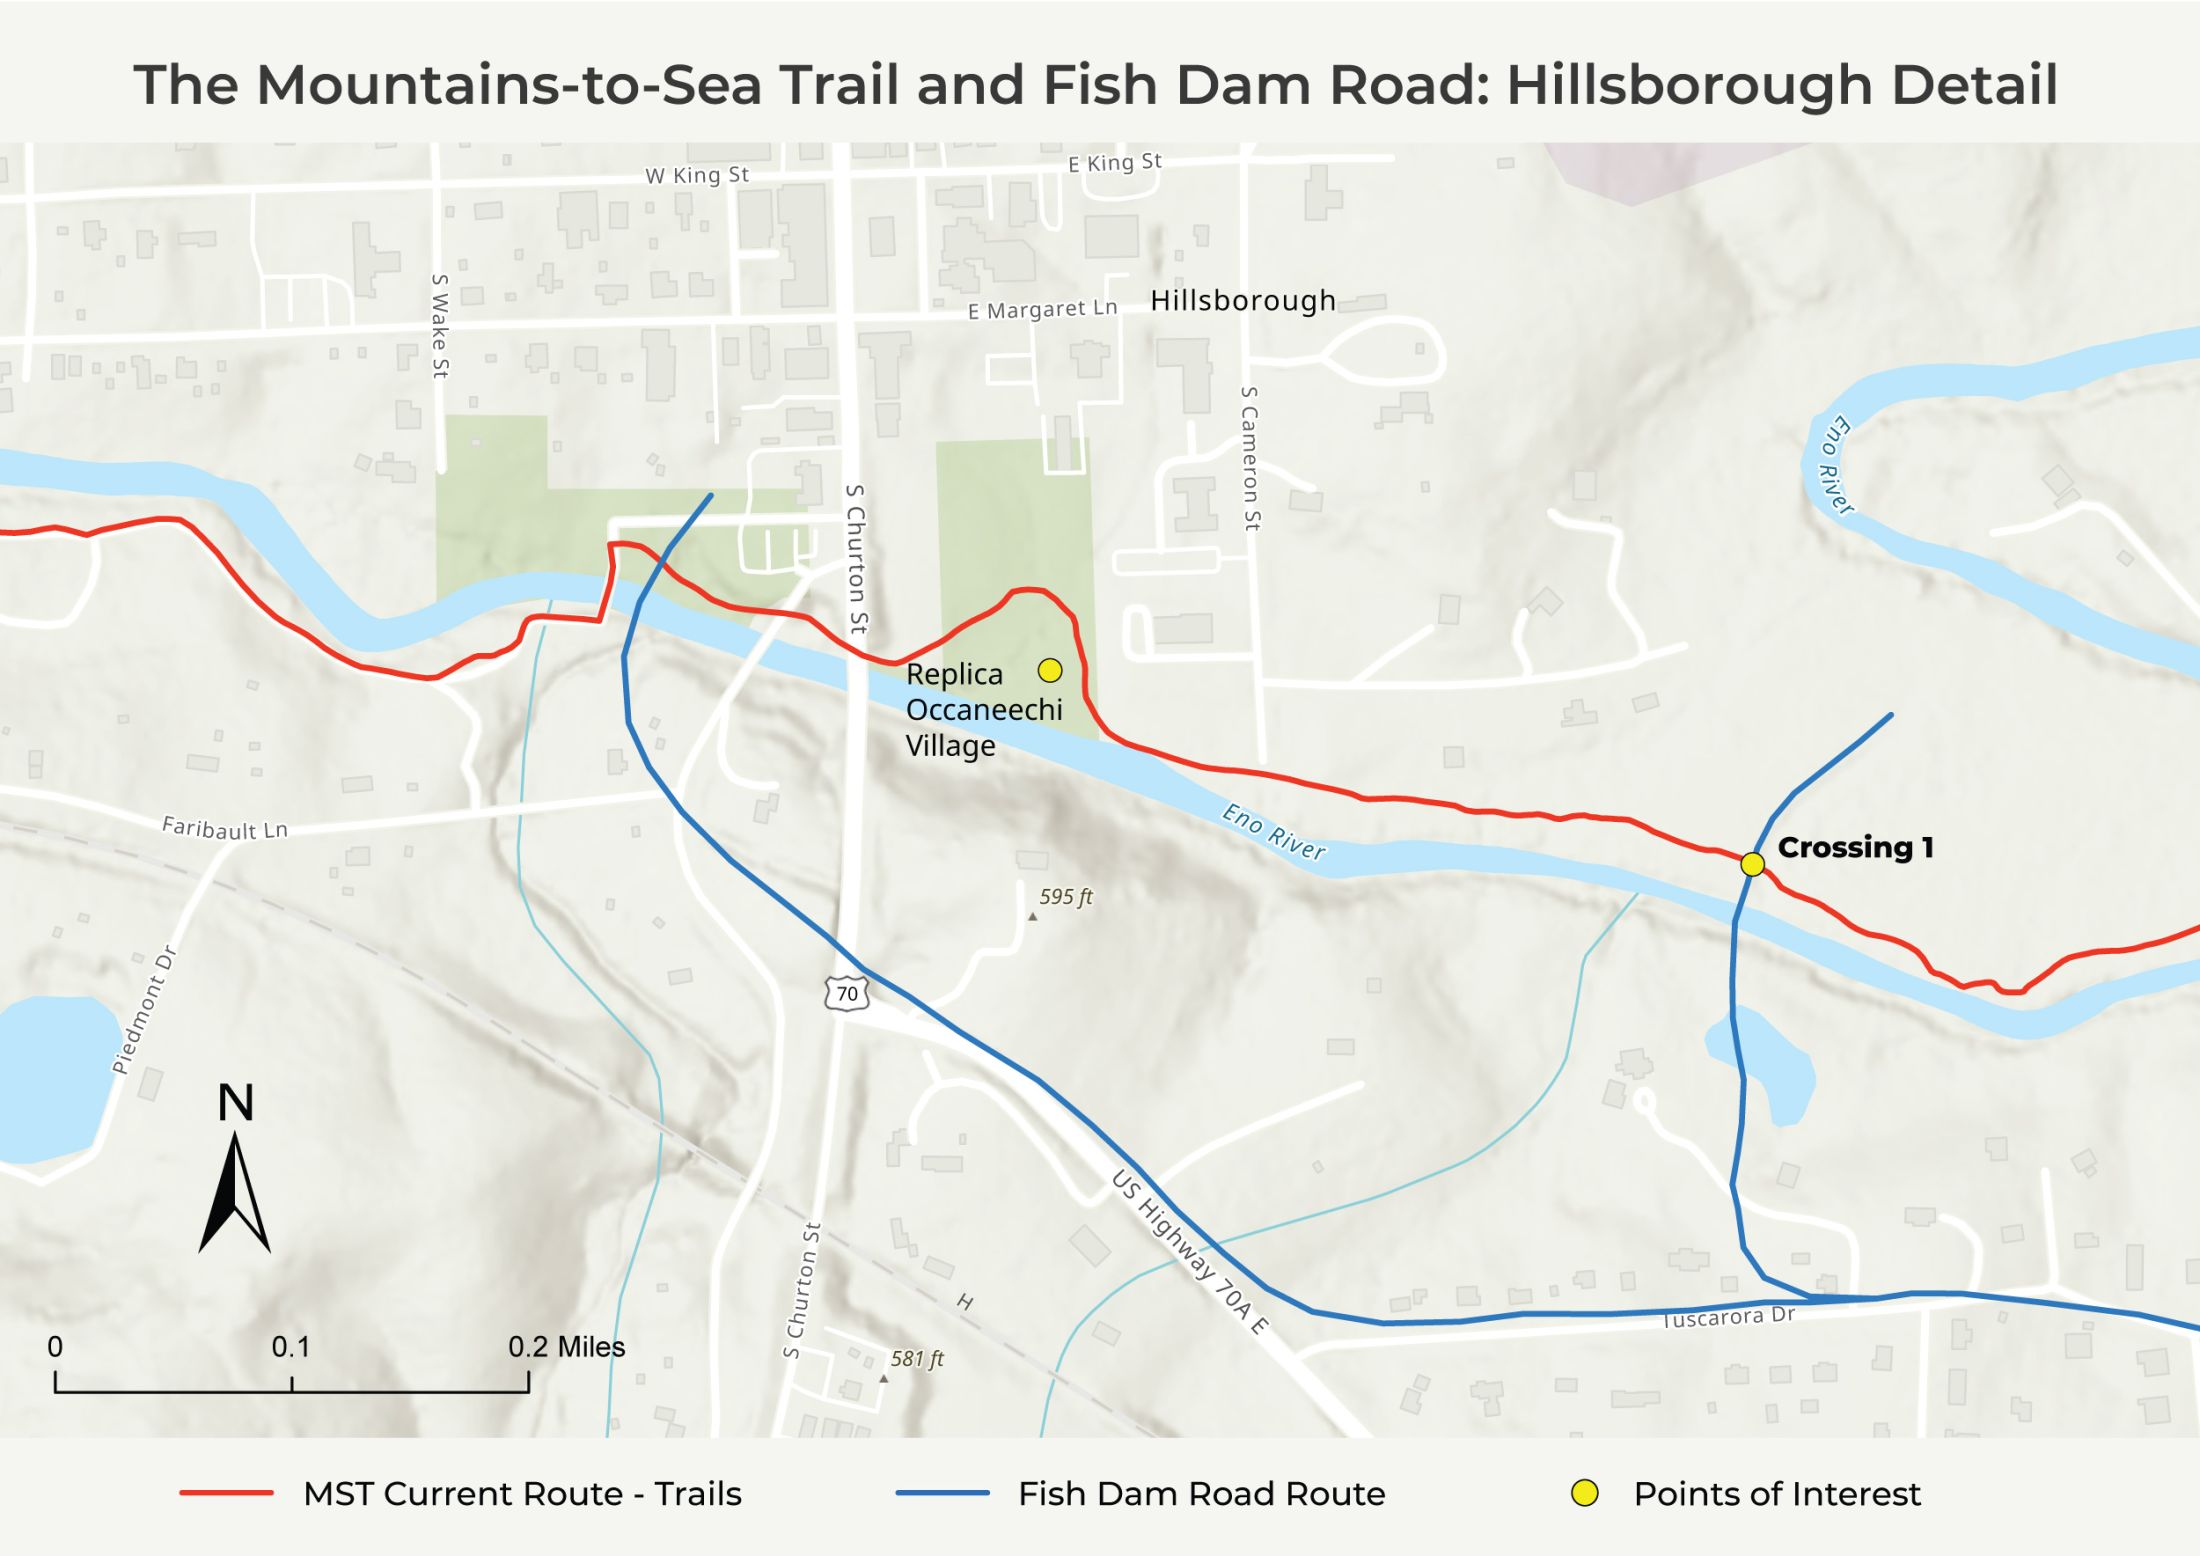 Fish Dam Road Crossing 1 - Hillsborough Detail Map